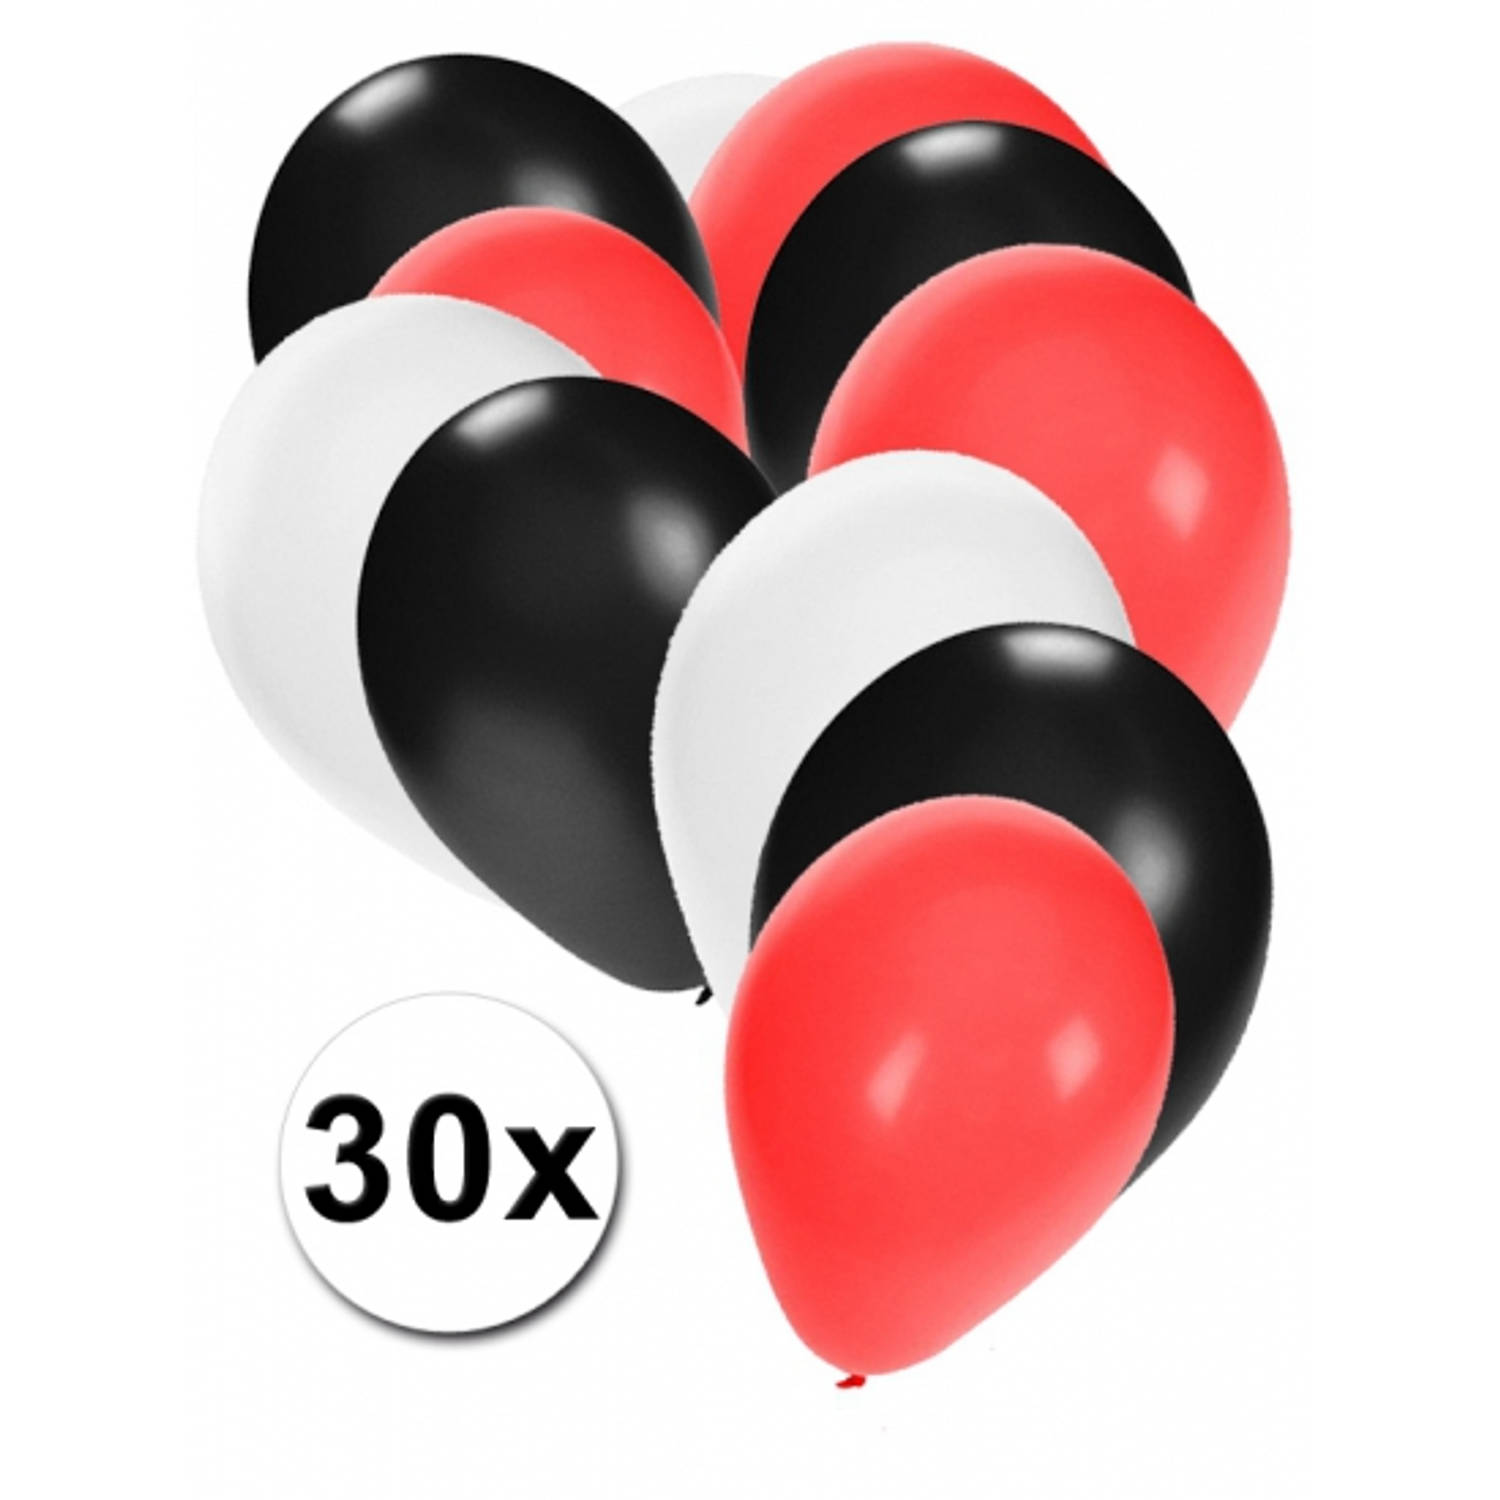 Ballonnen in kleuren zwart wit rood - Ballonnen